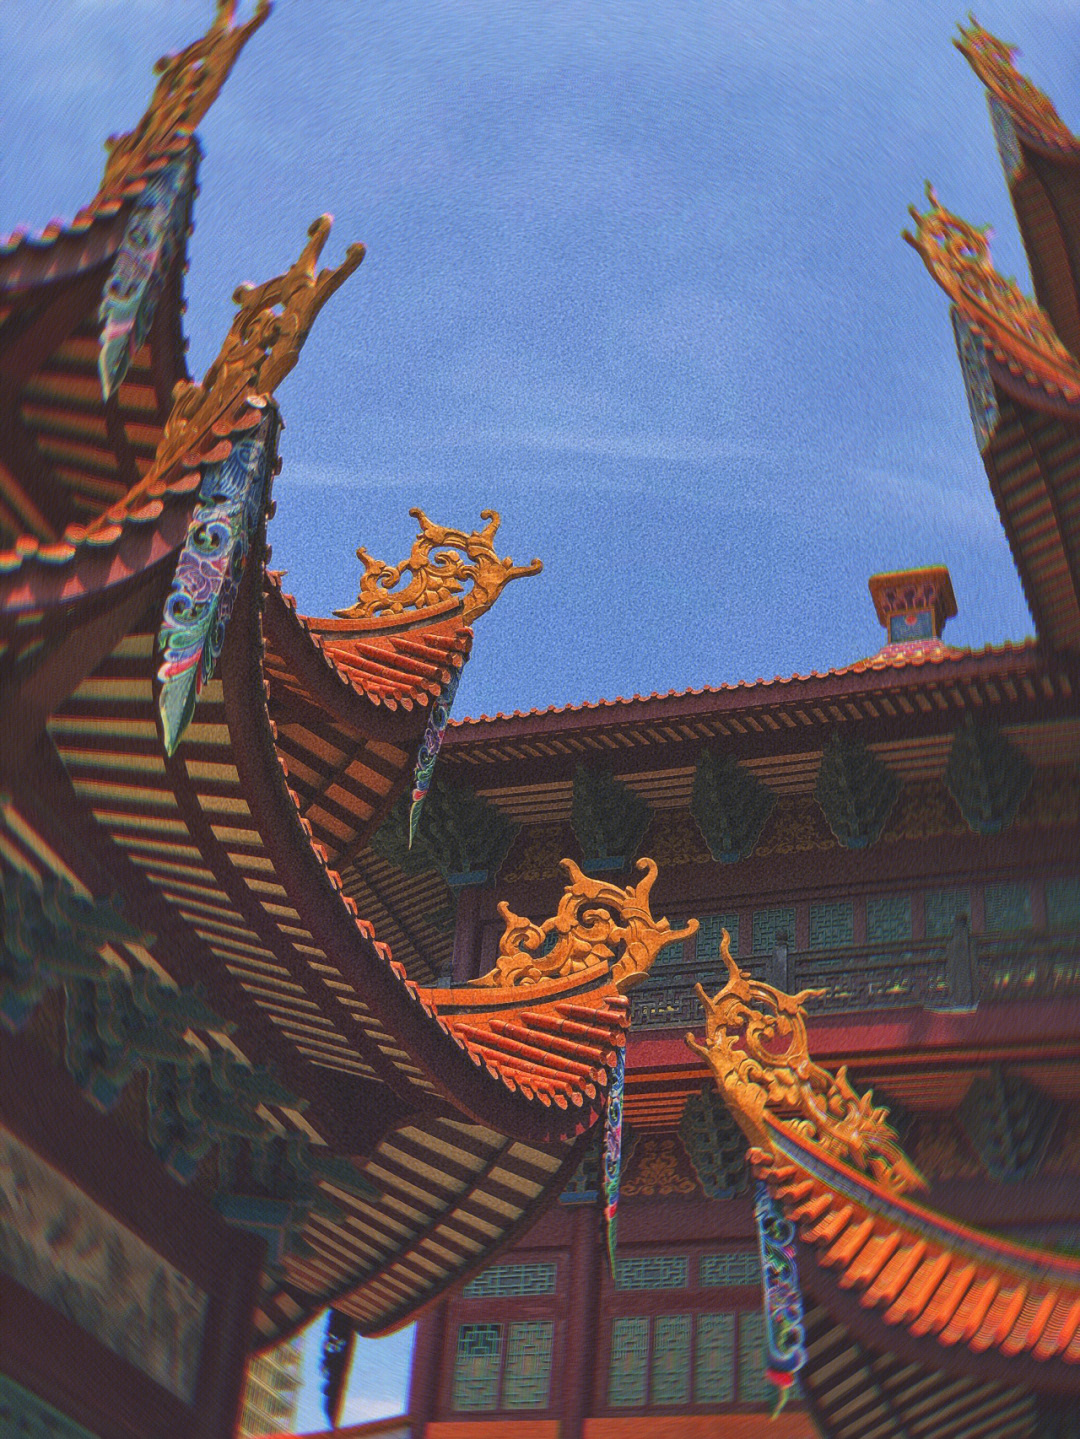 福州旅行 西禅寺,名列福州五大禅林之一,为全国重点寺庙,位于西郊怡